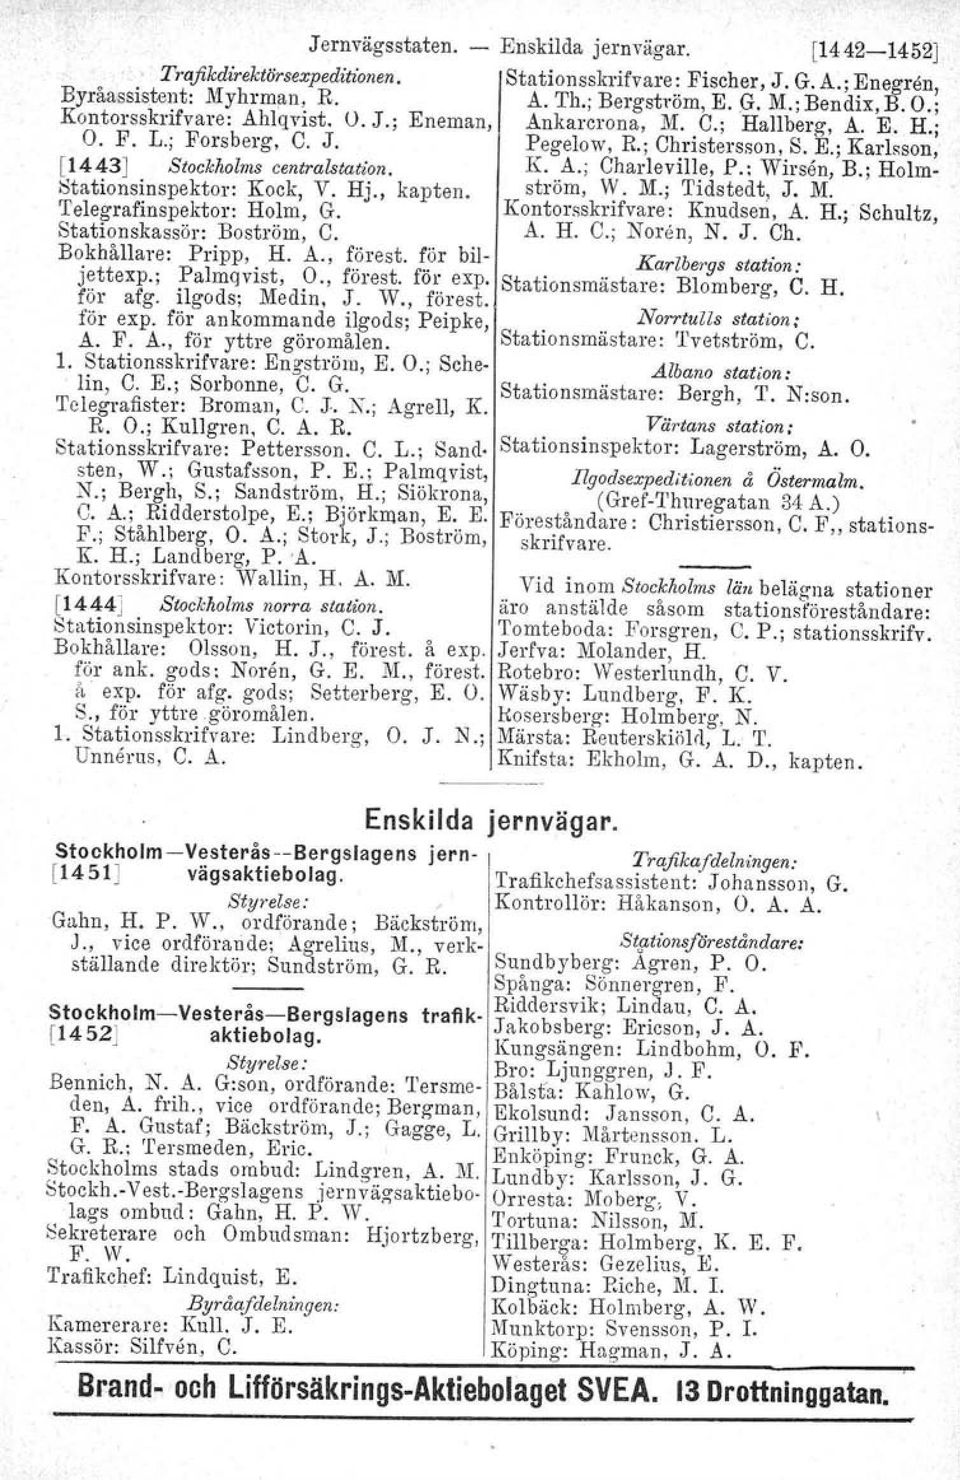 ilgods; Mcdin, J. W., förest. för expo för ankommande ilgods; Peipke, A. F. A., för yttre göromålen. 1. Stationsskrifvare: Engström, E. O.; Sch e- lin, C. E.; Sorbonne, C. G. Telegrafister: Broman. C. J.. No; Agrell, K.